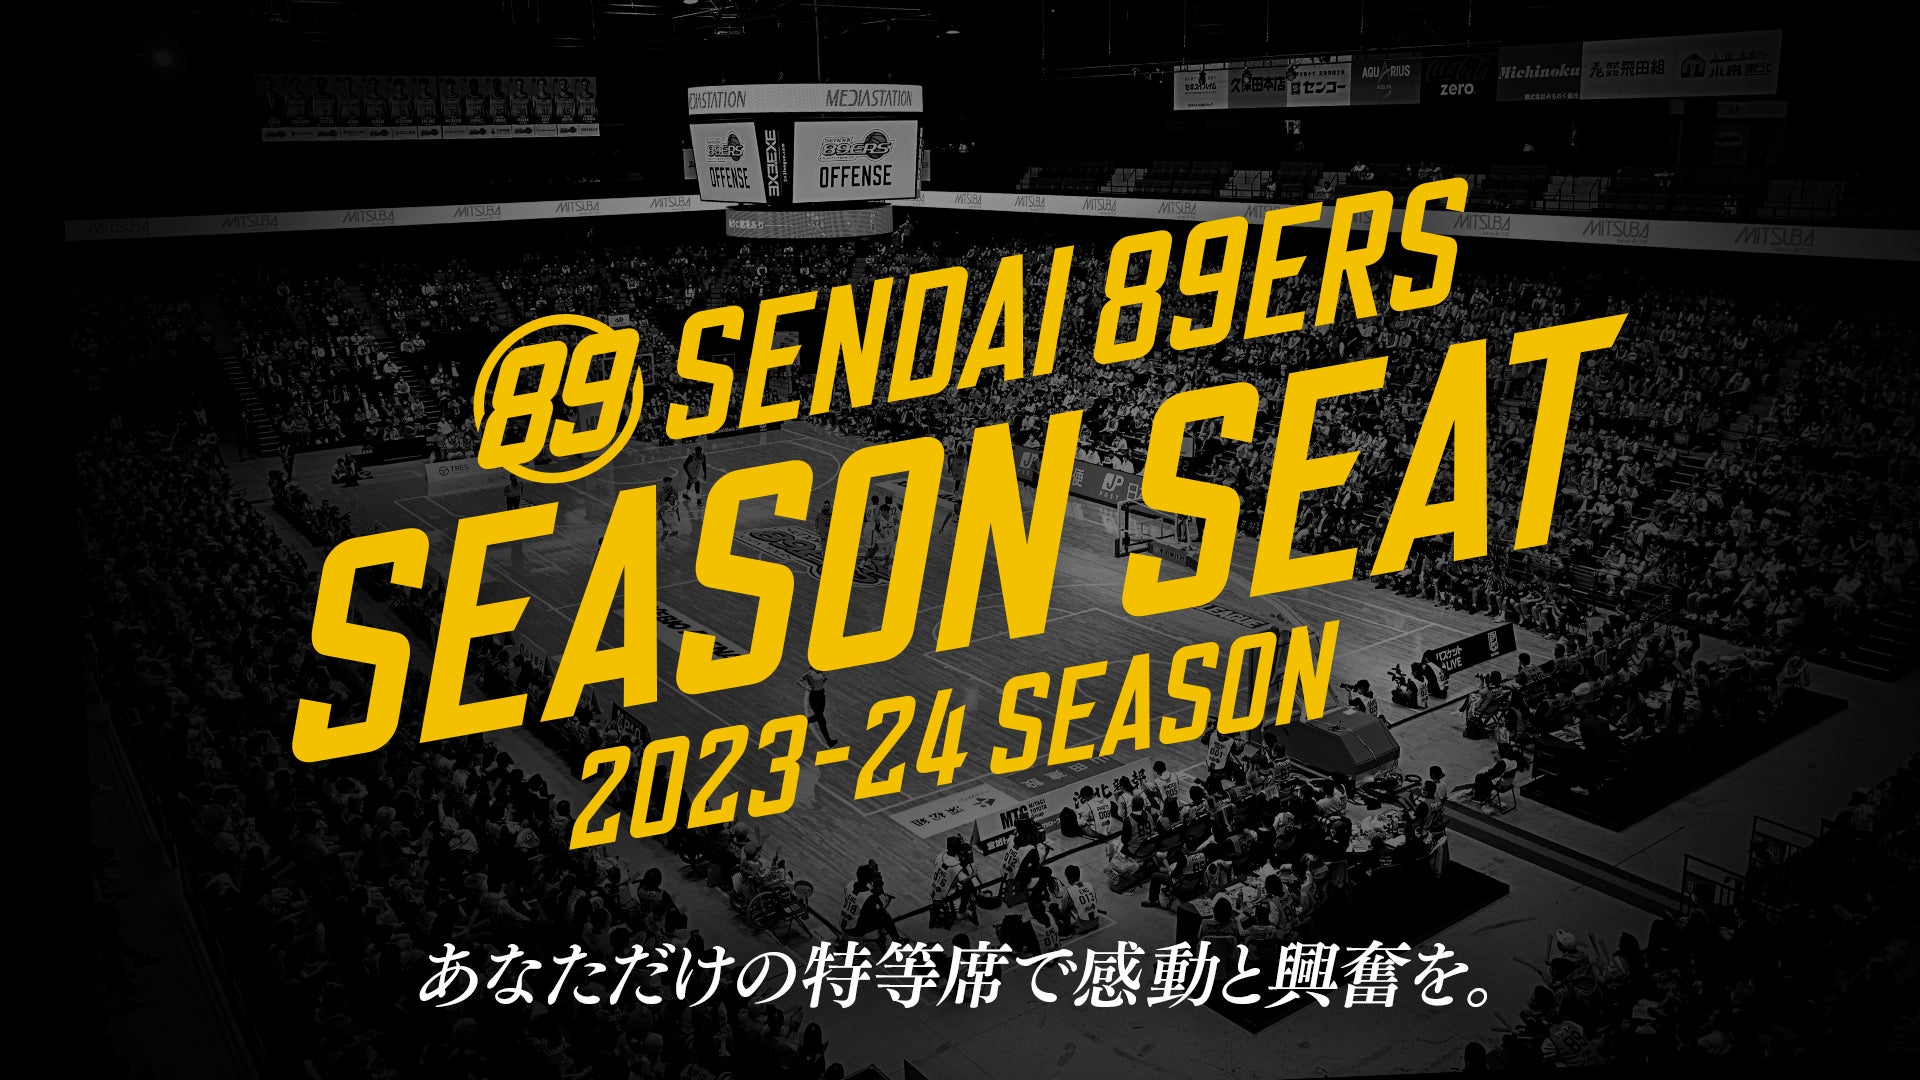 2023-24シーズンチケット概要について | 仙台89ERS